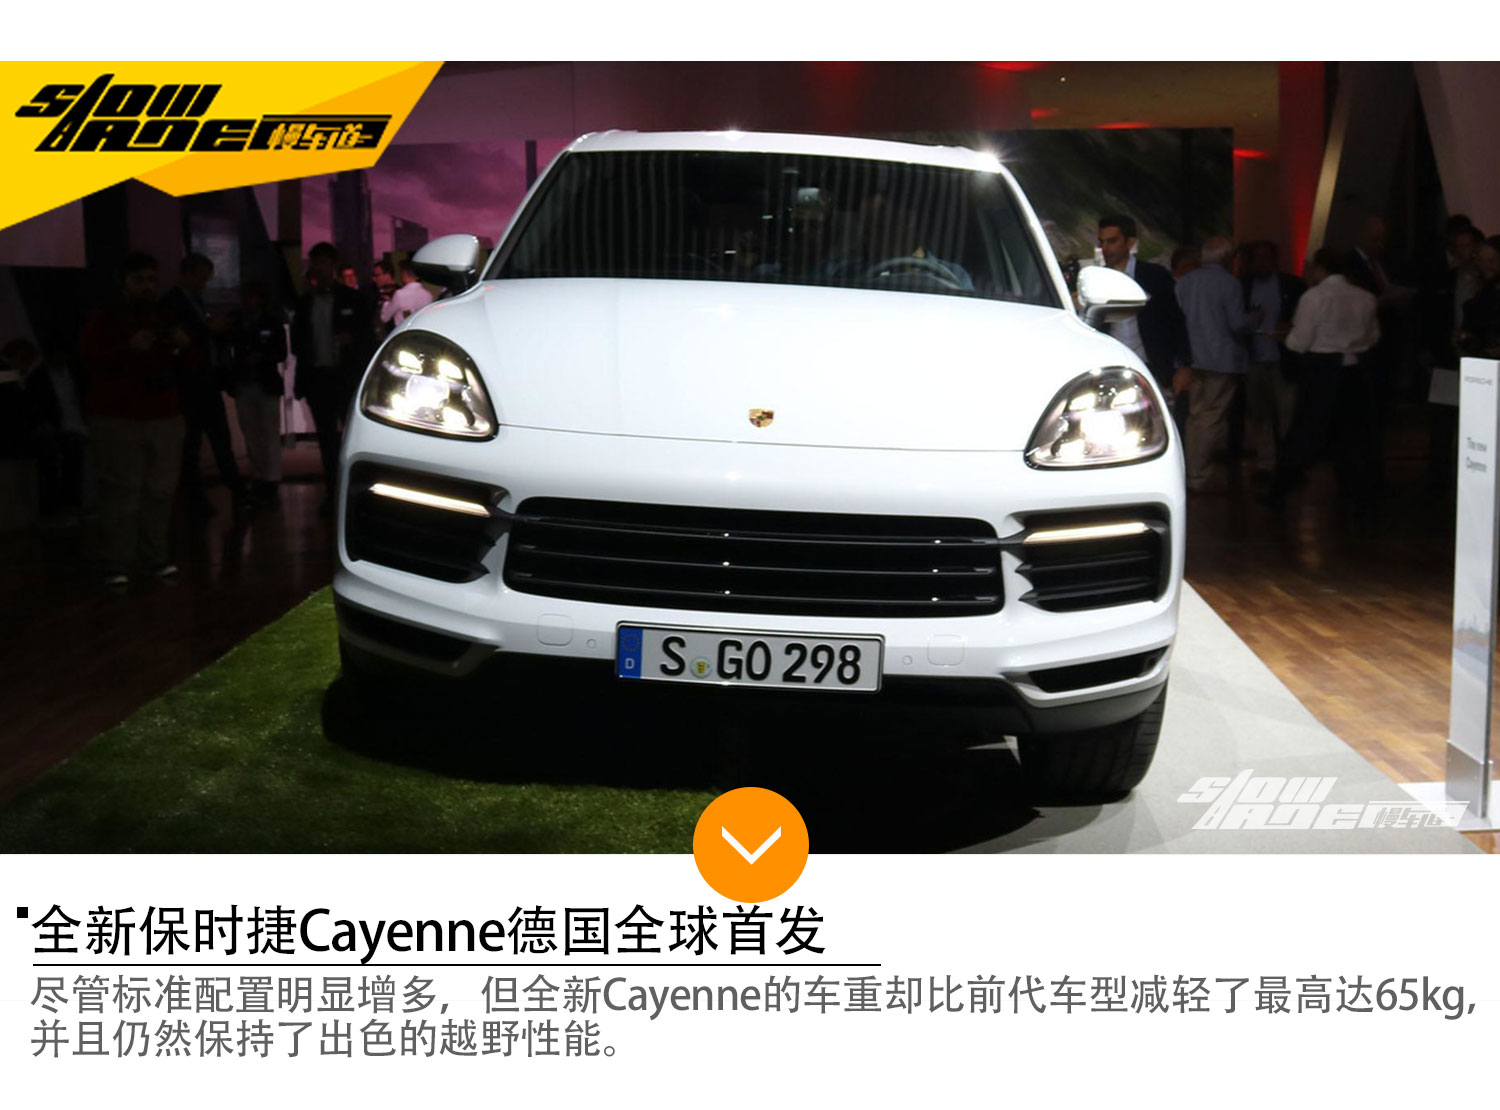 全新保时捷Cayenne全球首发 最大功率250kW